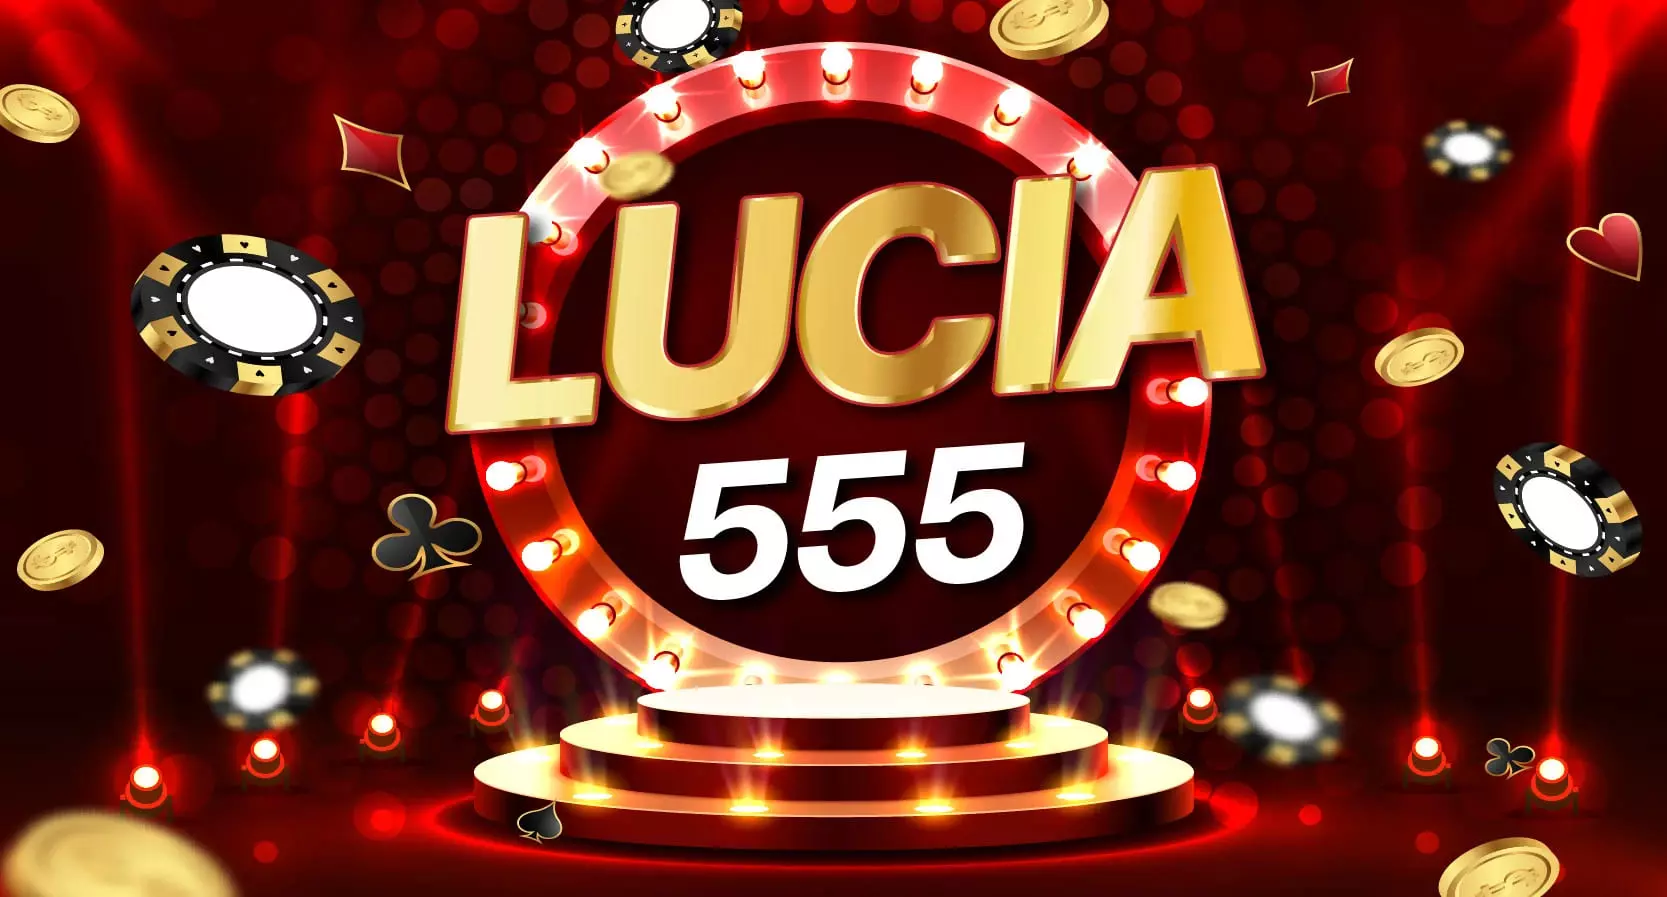 lucia555